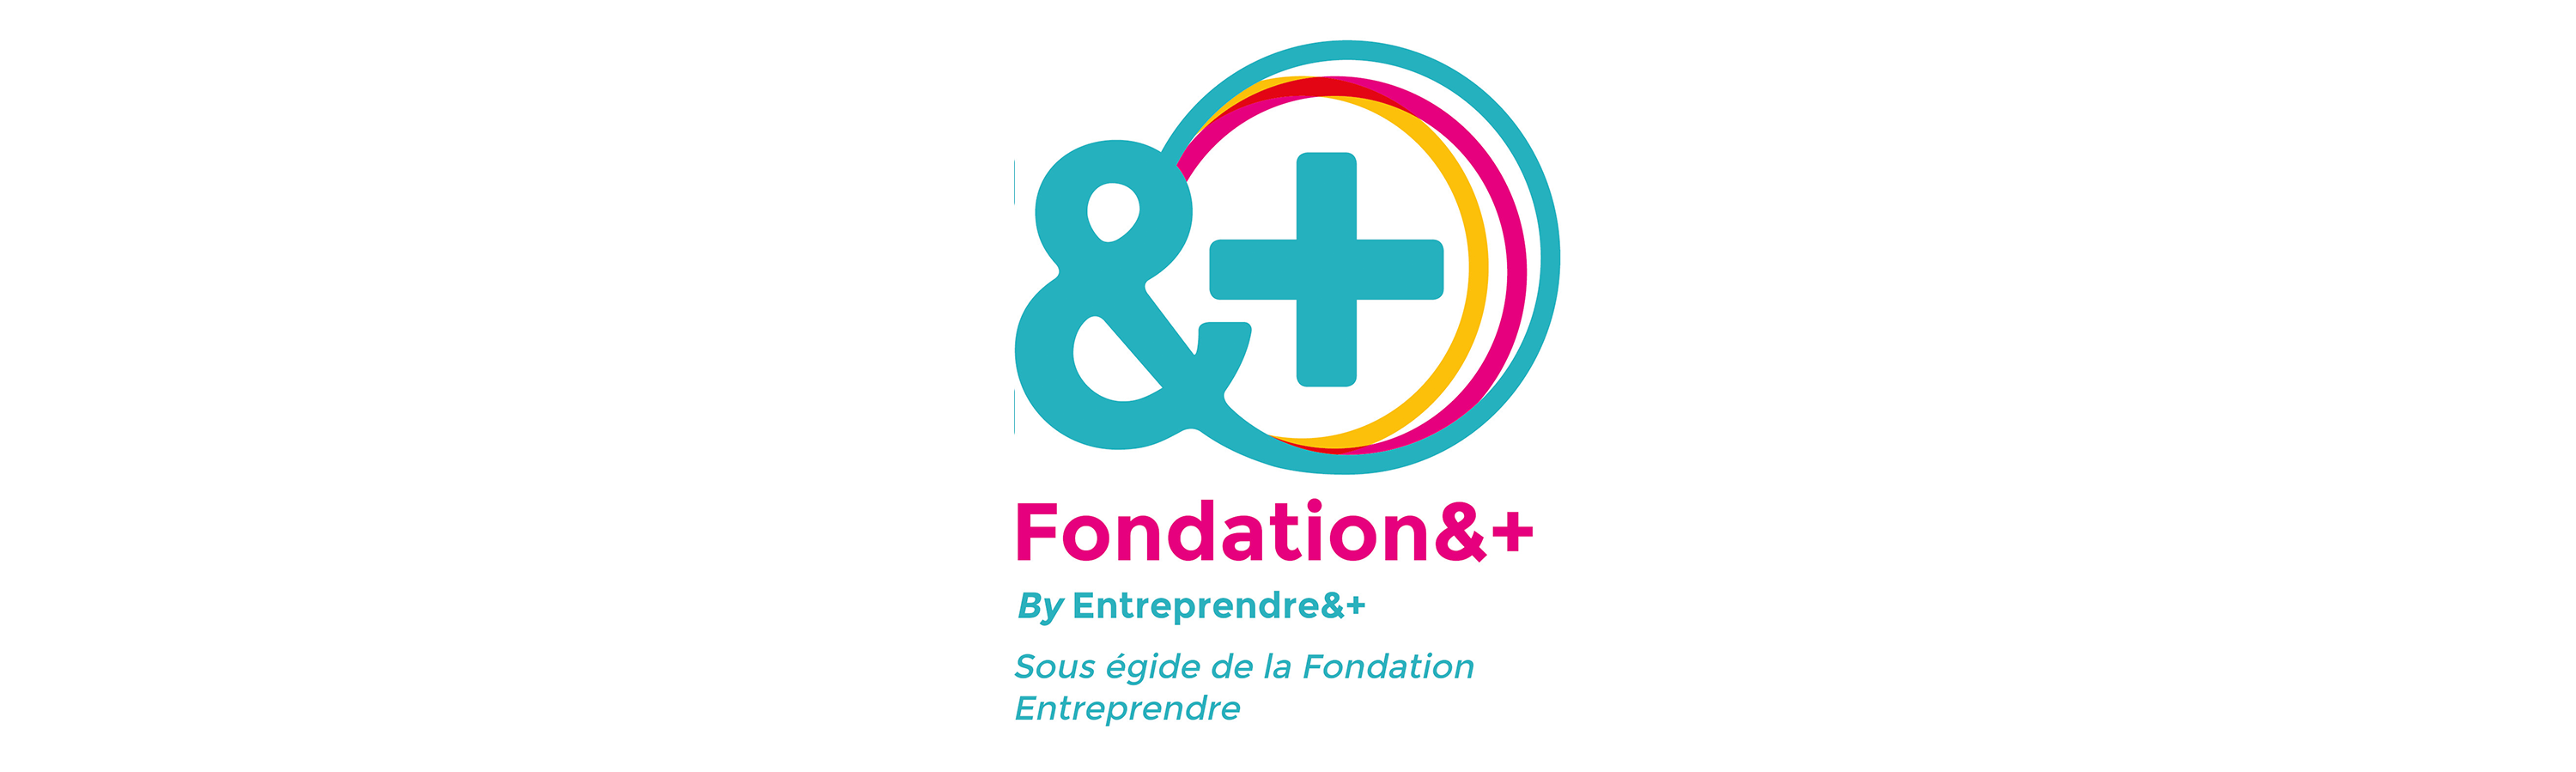 Bannière fondation &+ VF1.png